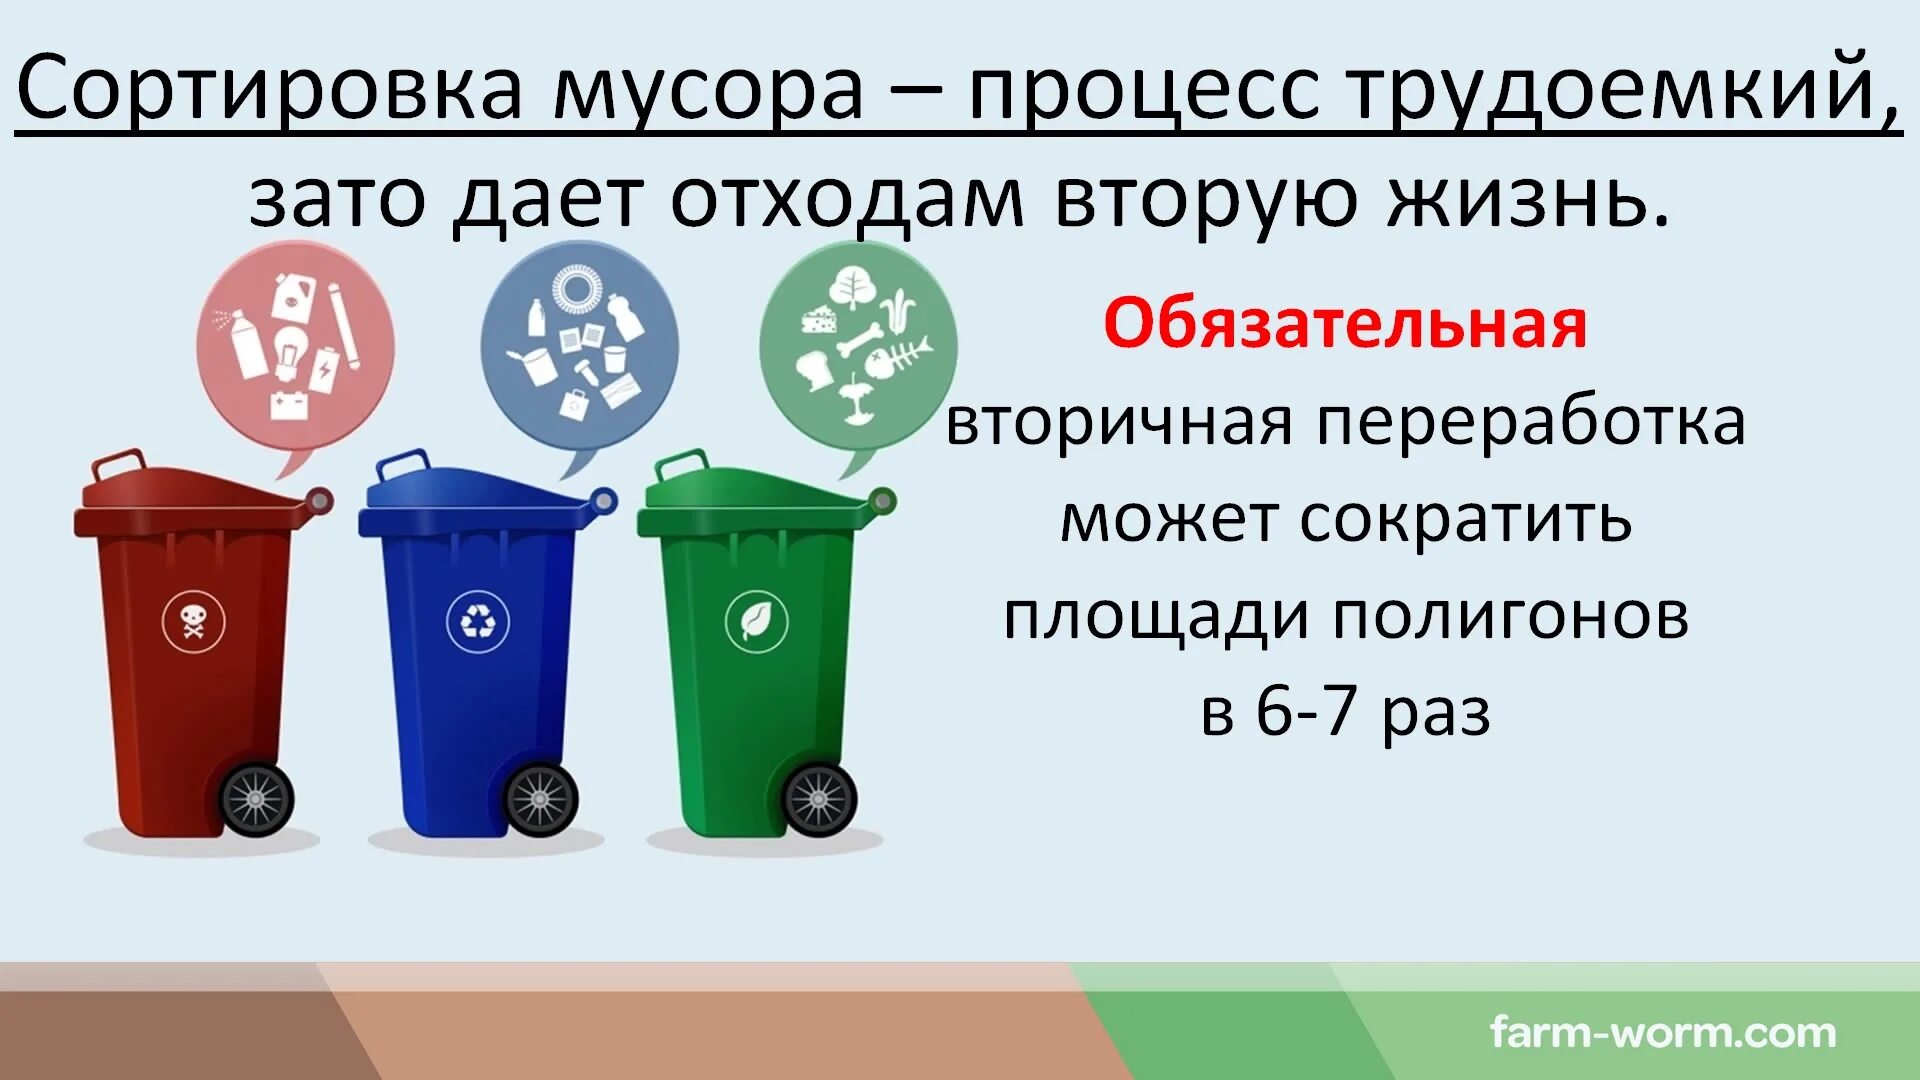 Для каких отходов. Классификация утилизации отходов. Типы бытовых отходов. Типы мусорных отходов.